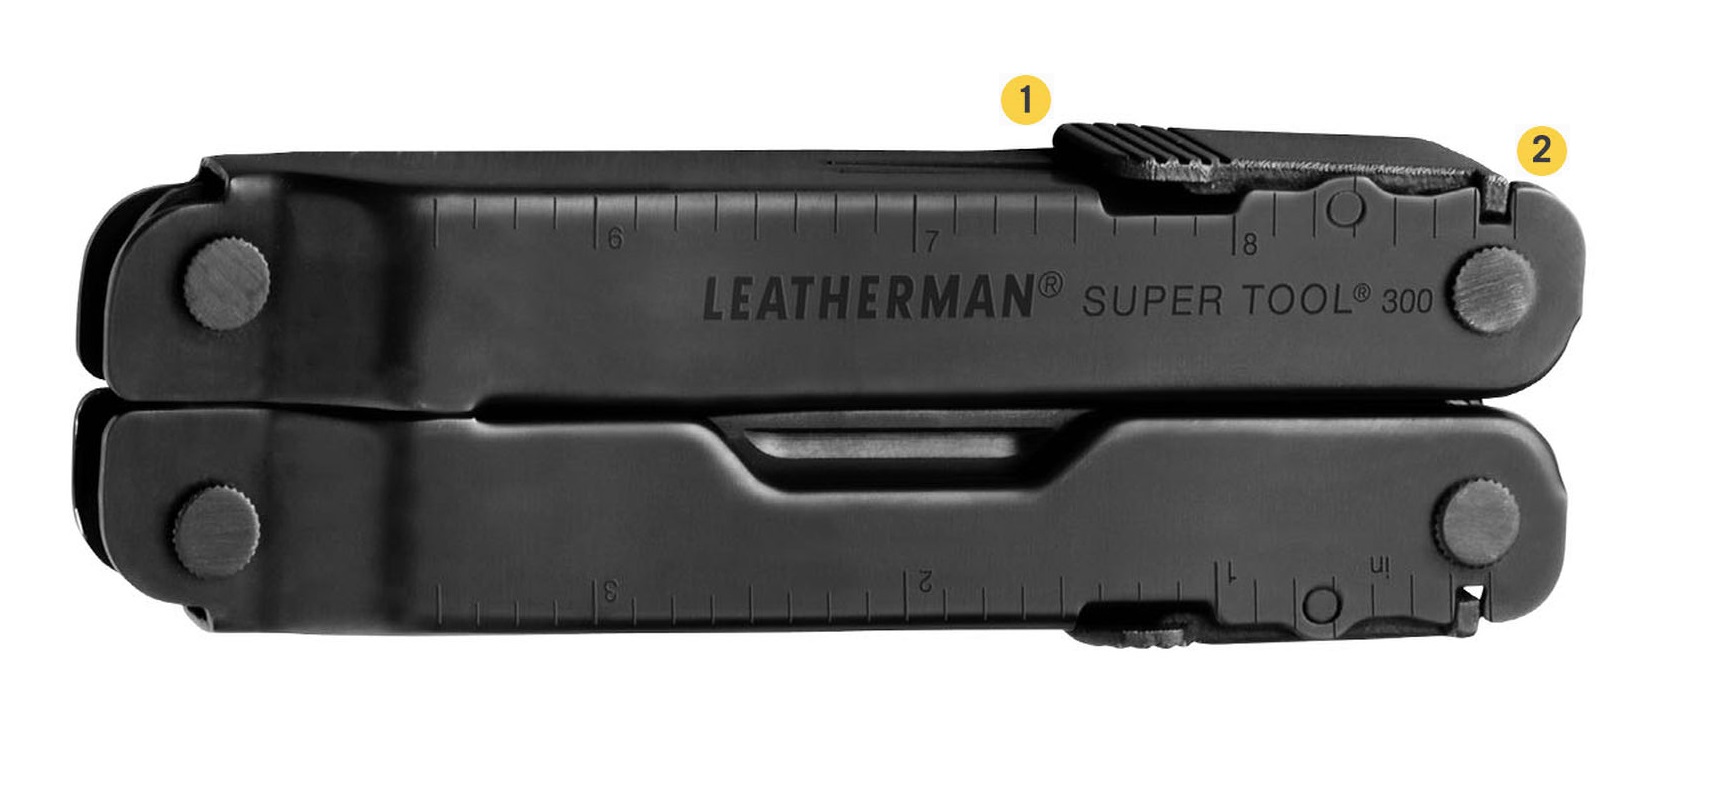 Багатофункціональний інструмент Leatherman Super Tool 300 з надійною фіксацією та блокуванням 